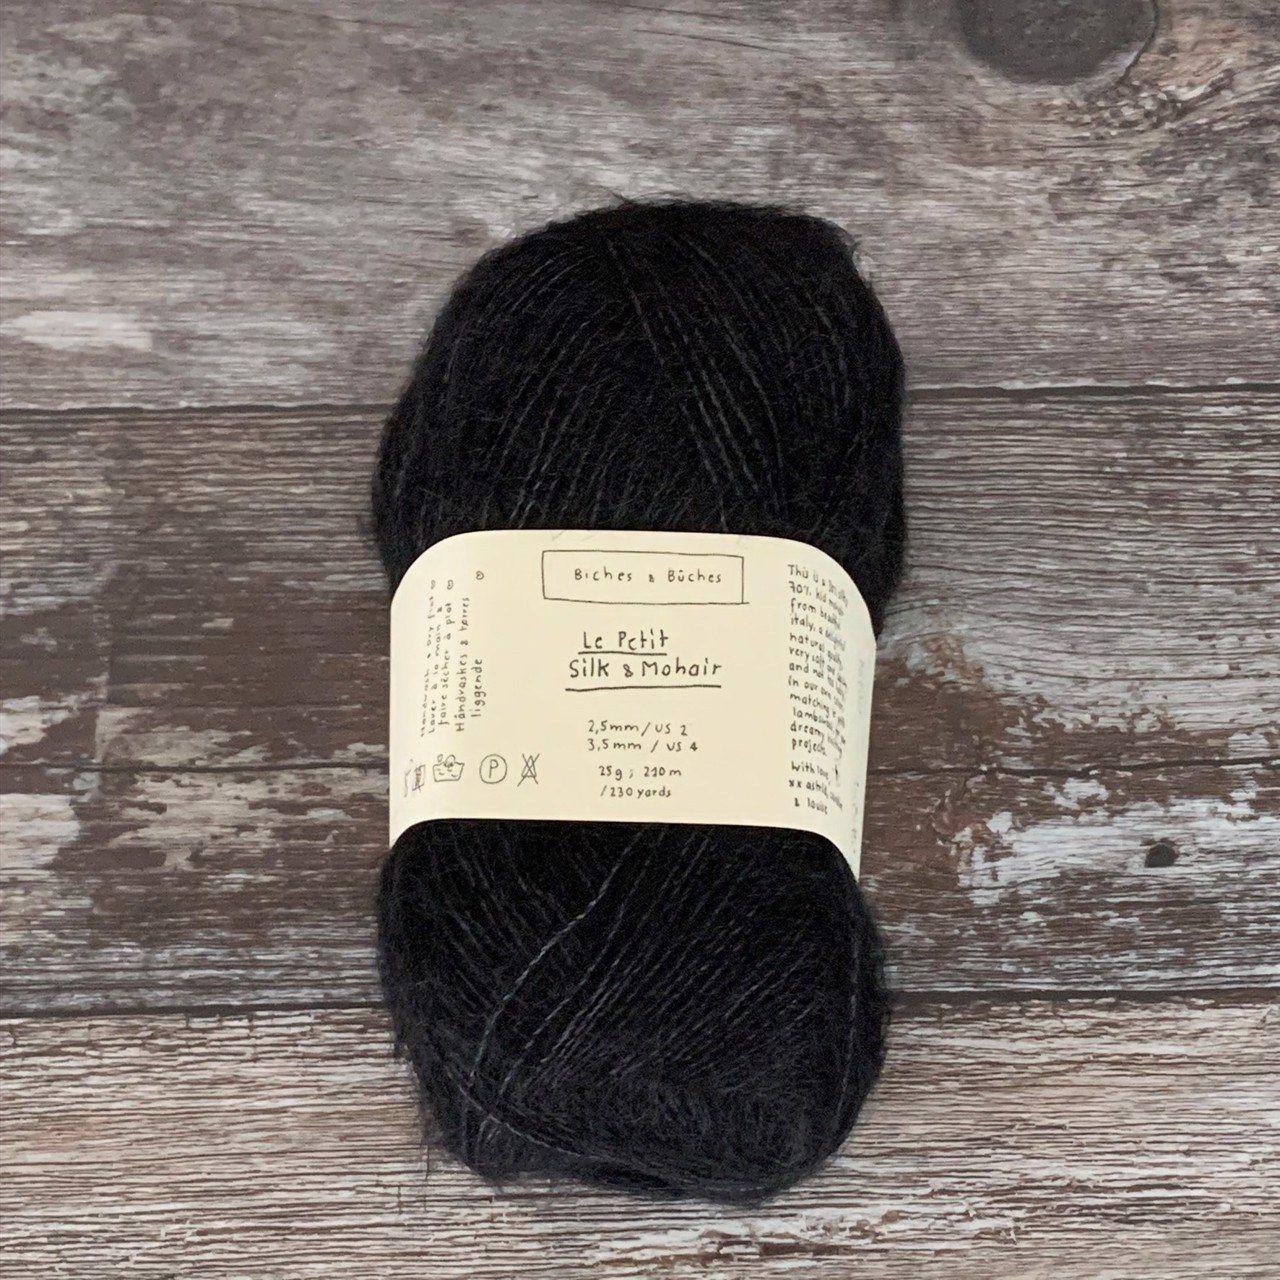 Biches & Bûches Biches & Bûches Le Petit Silk & Mohair - Black - Lace Knitting Yarn